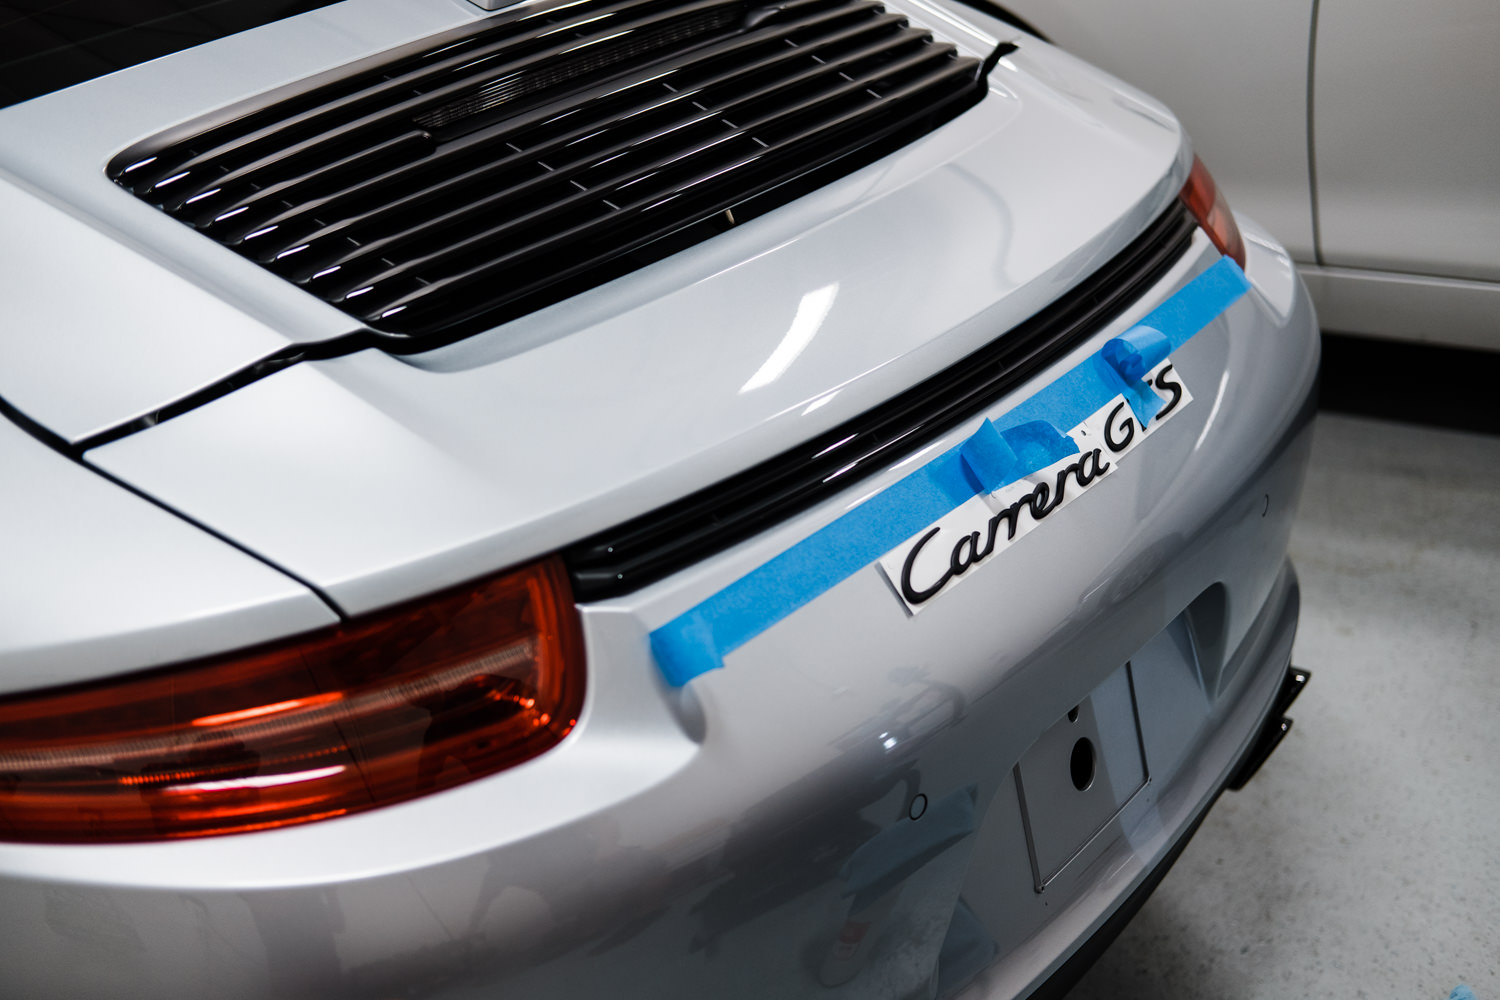 Porsche 911 - Porsche - Wichita Clear Bra - XPEL - XPEL Ultimate - Ceramic Pro - Ceramic Coating - Car Detailing - Porsche 911 GTS-152.jpg